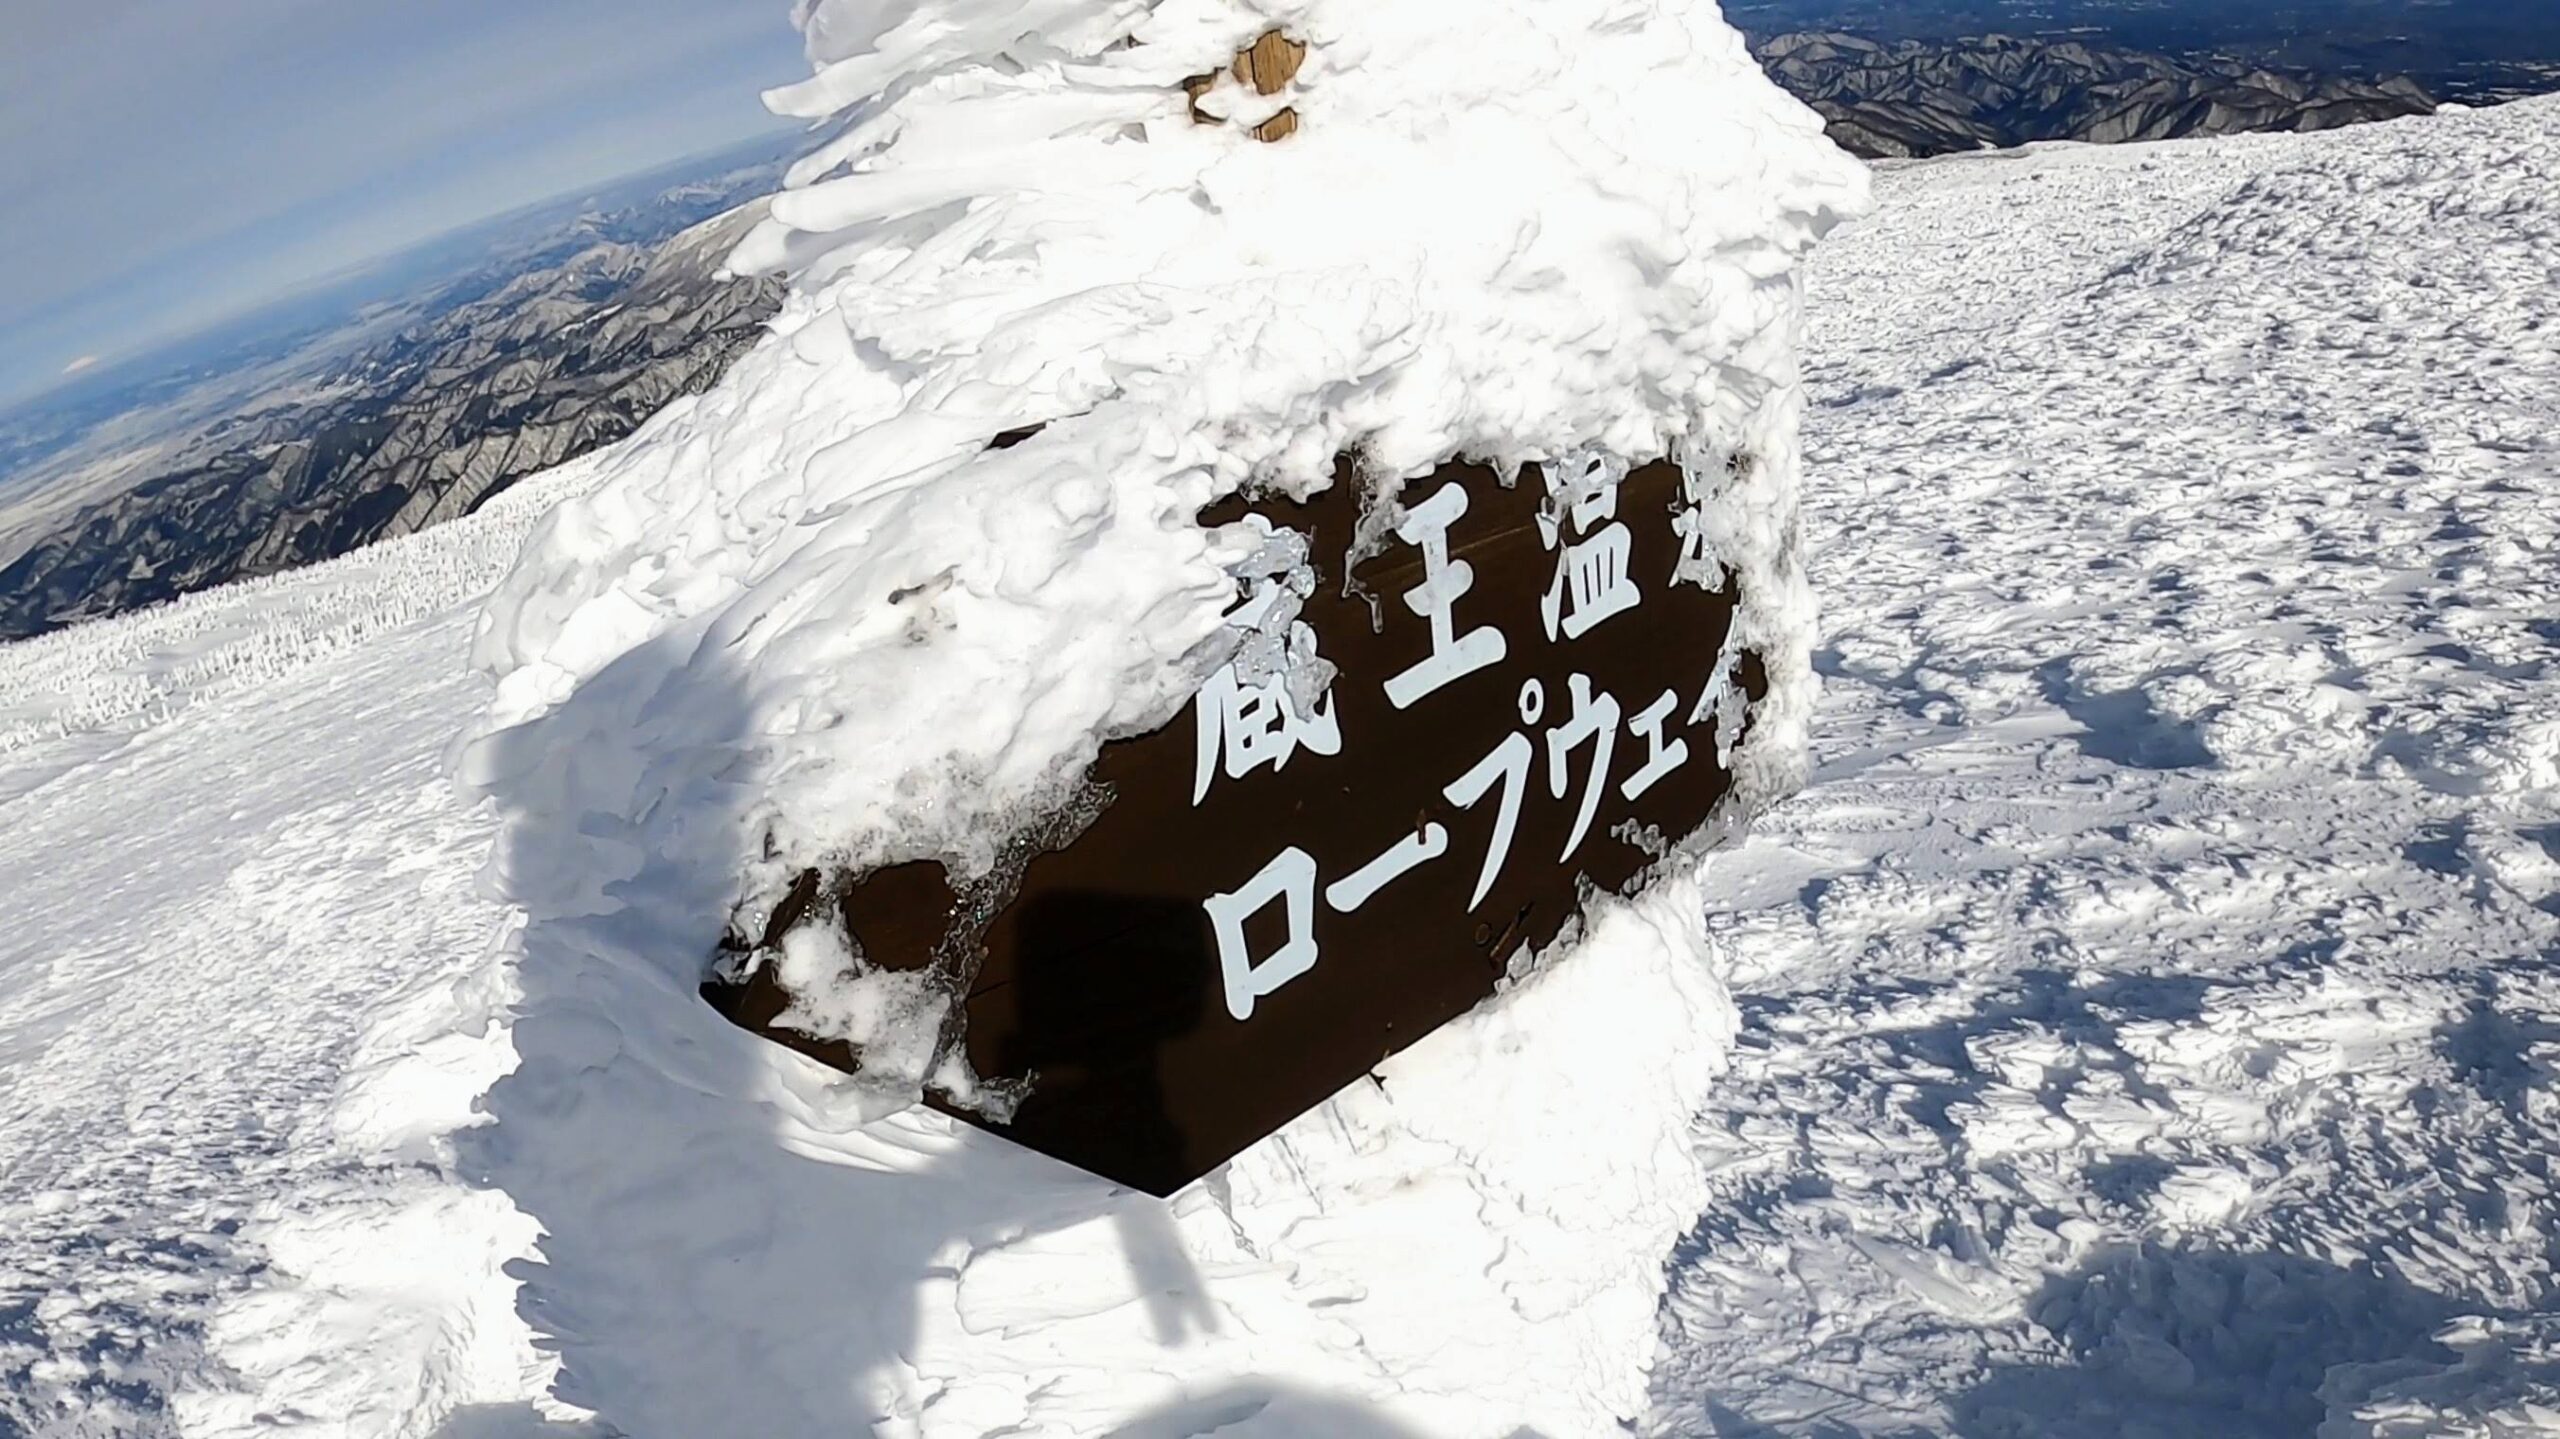 【世界のZAO絶景 ケタが違い過ぎる】冬の蔵王頂上へトレッキング yamagatazao-world-class-views-jan.jpg